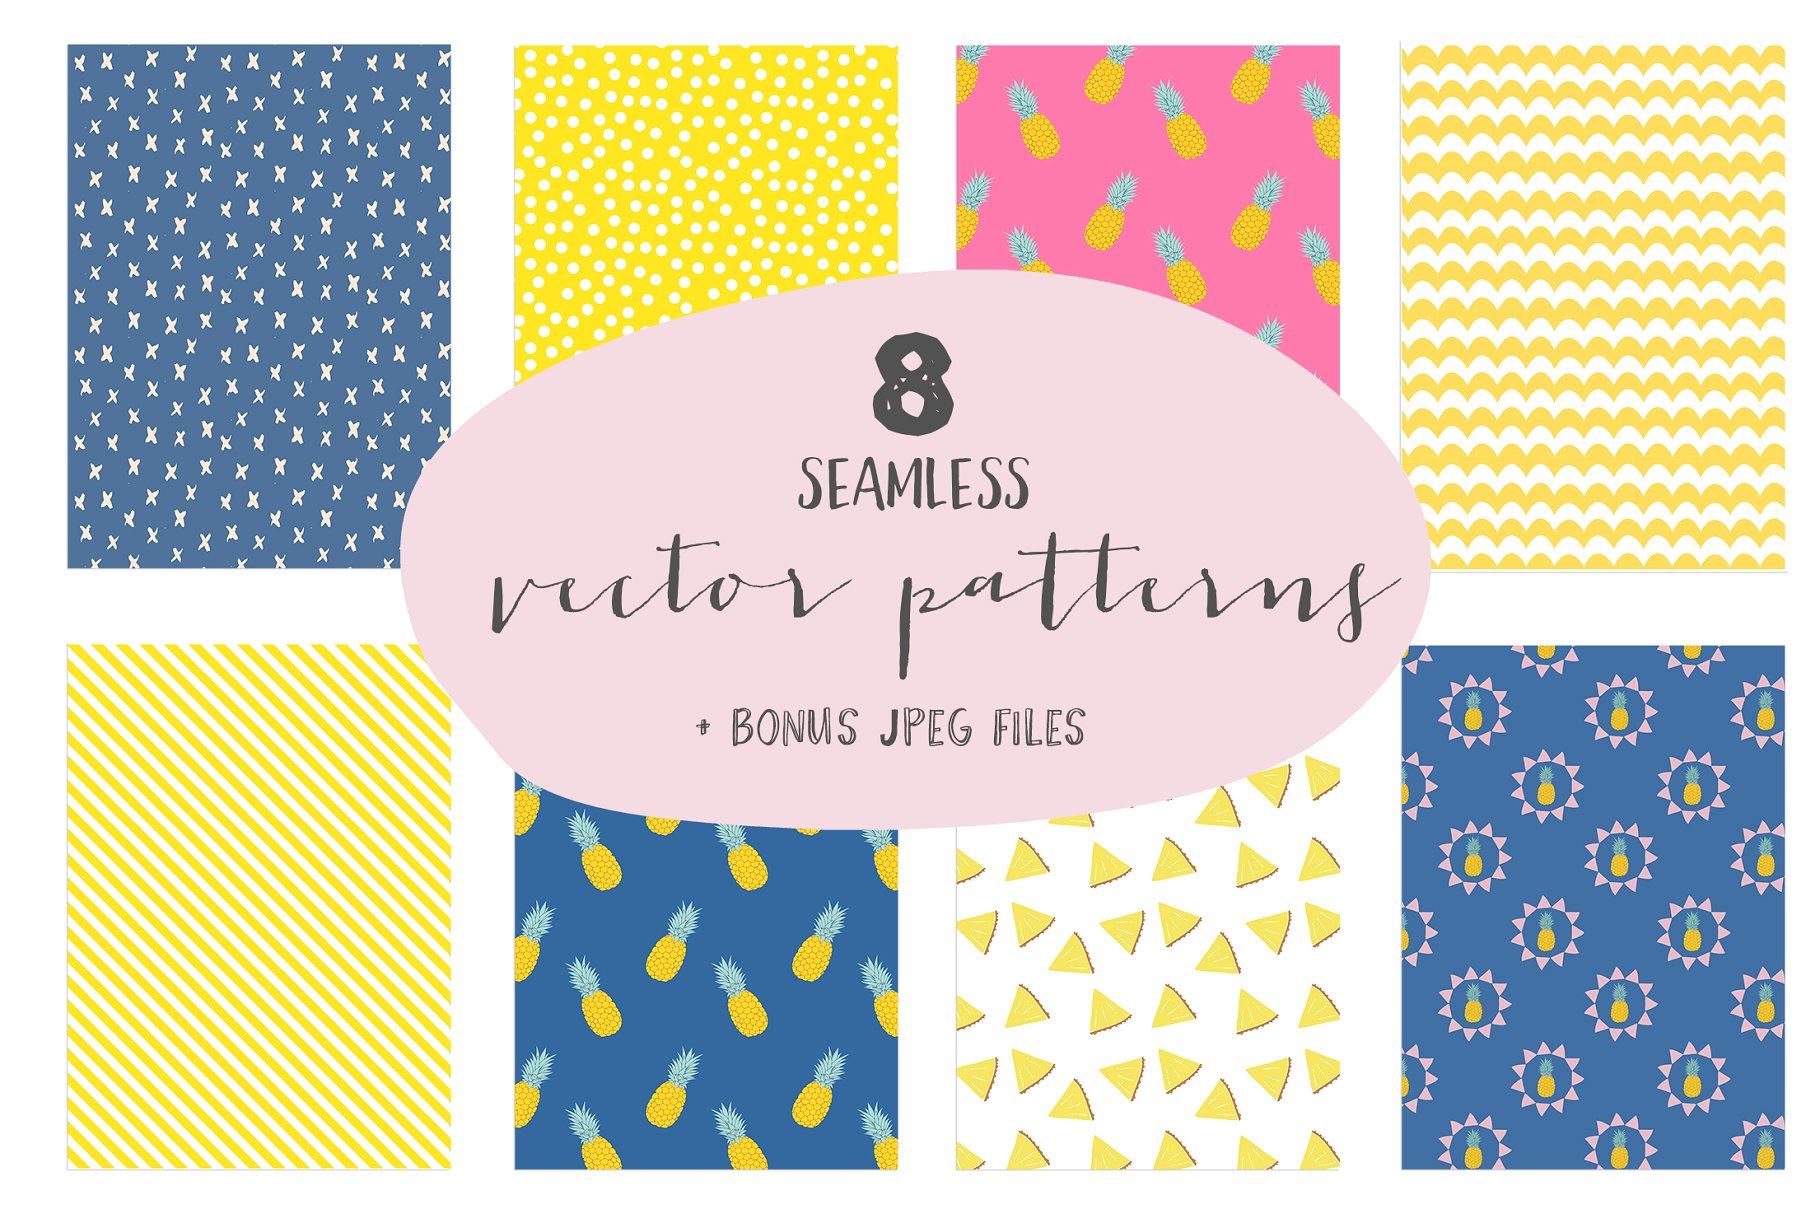 一套黄色、蓝色和粉色的现代夏季菠萝图案  Summer pineapple patterns插图